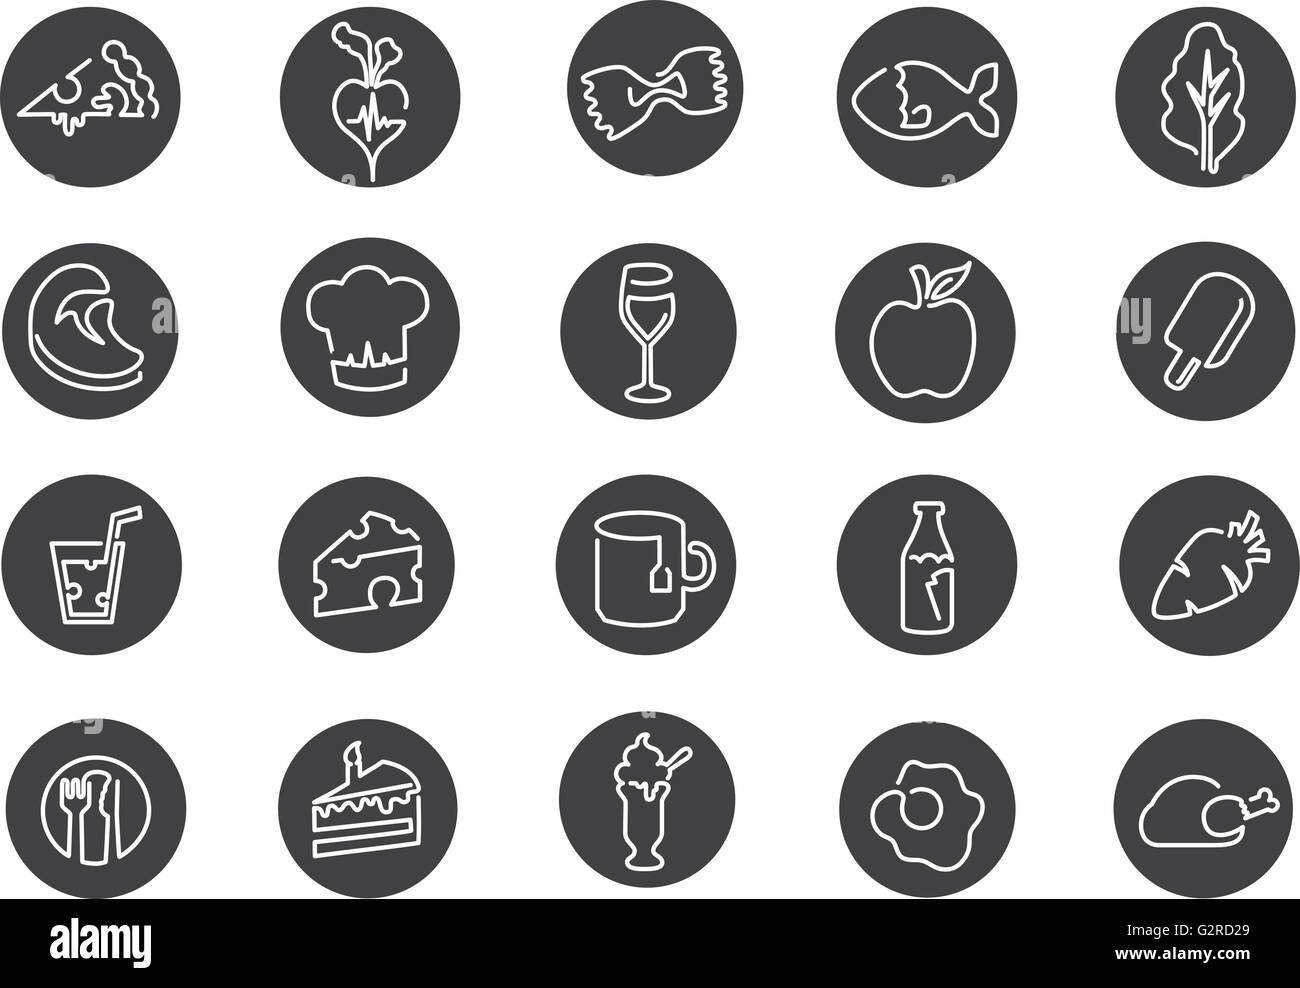 Darstellung der Symbole im Zusammenhang mit Essen, trinken und Ernährung Stock Vektor